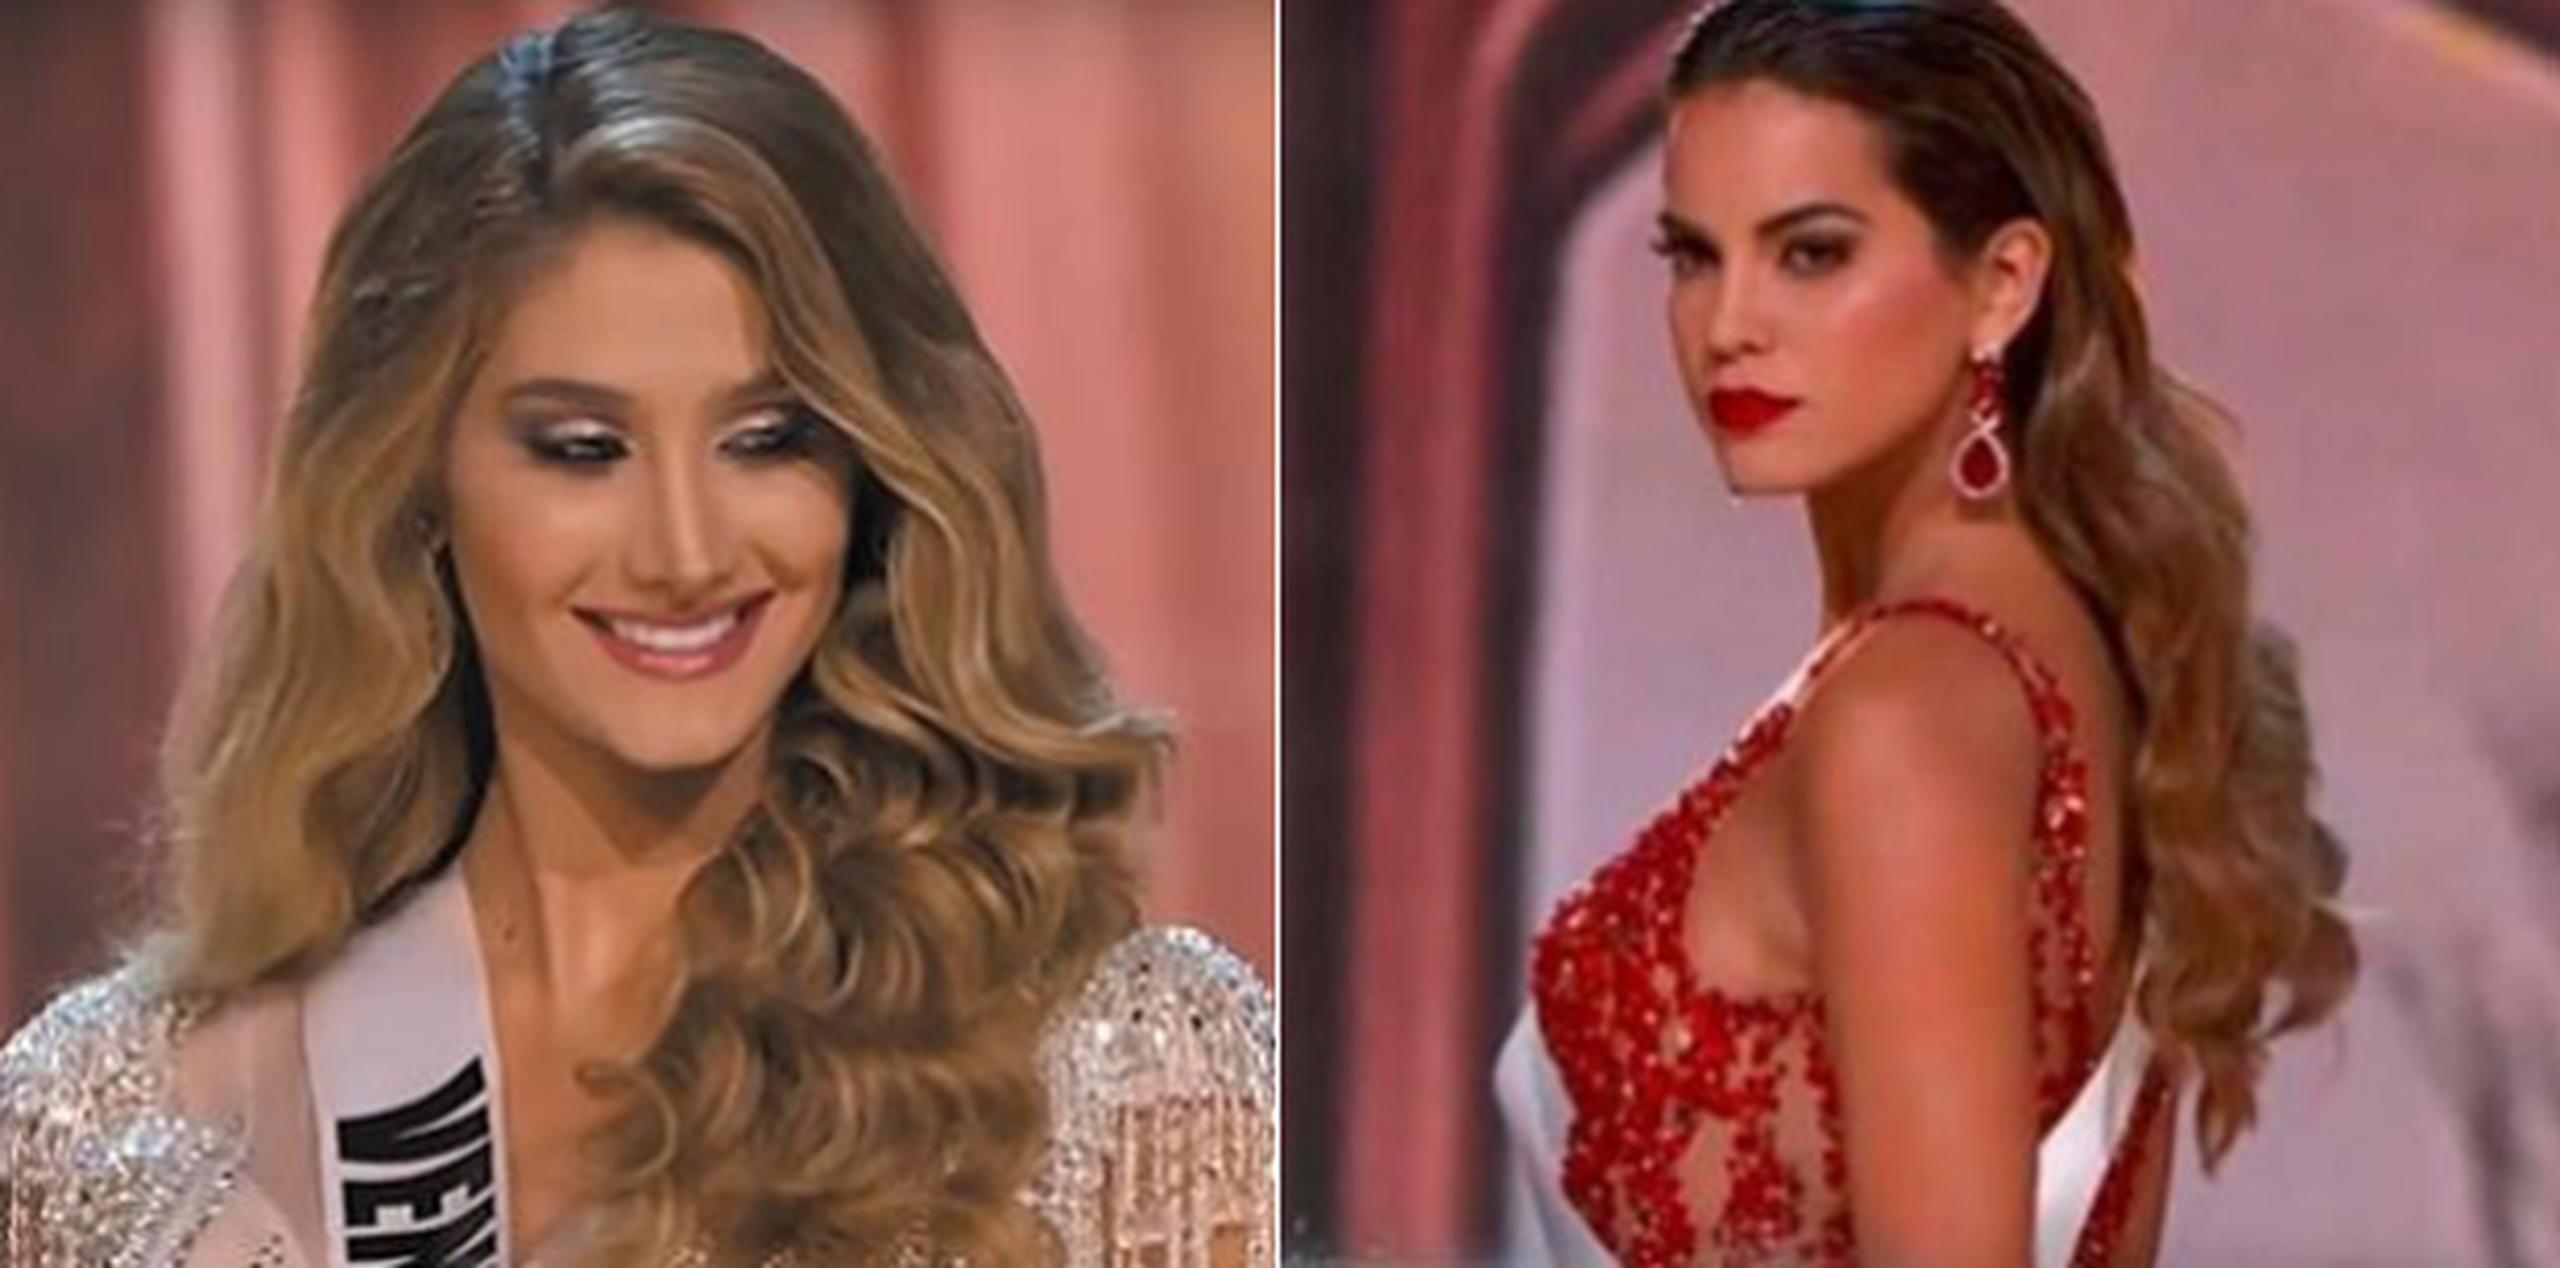 Al parecer, Valeria Piazza esperaba que la Miss Venezuela le ofrezca disculpas por lo ocurrido, pero esta pasó directamente, casi sin prestarle atención. (Montaje)